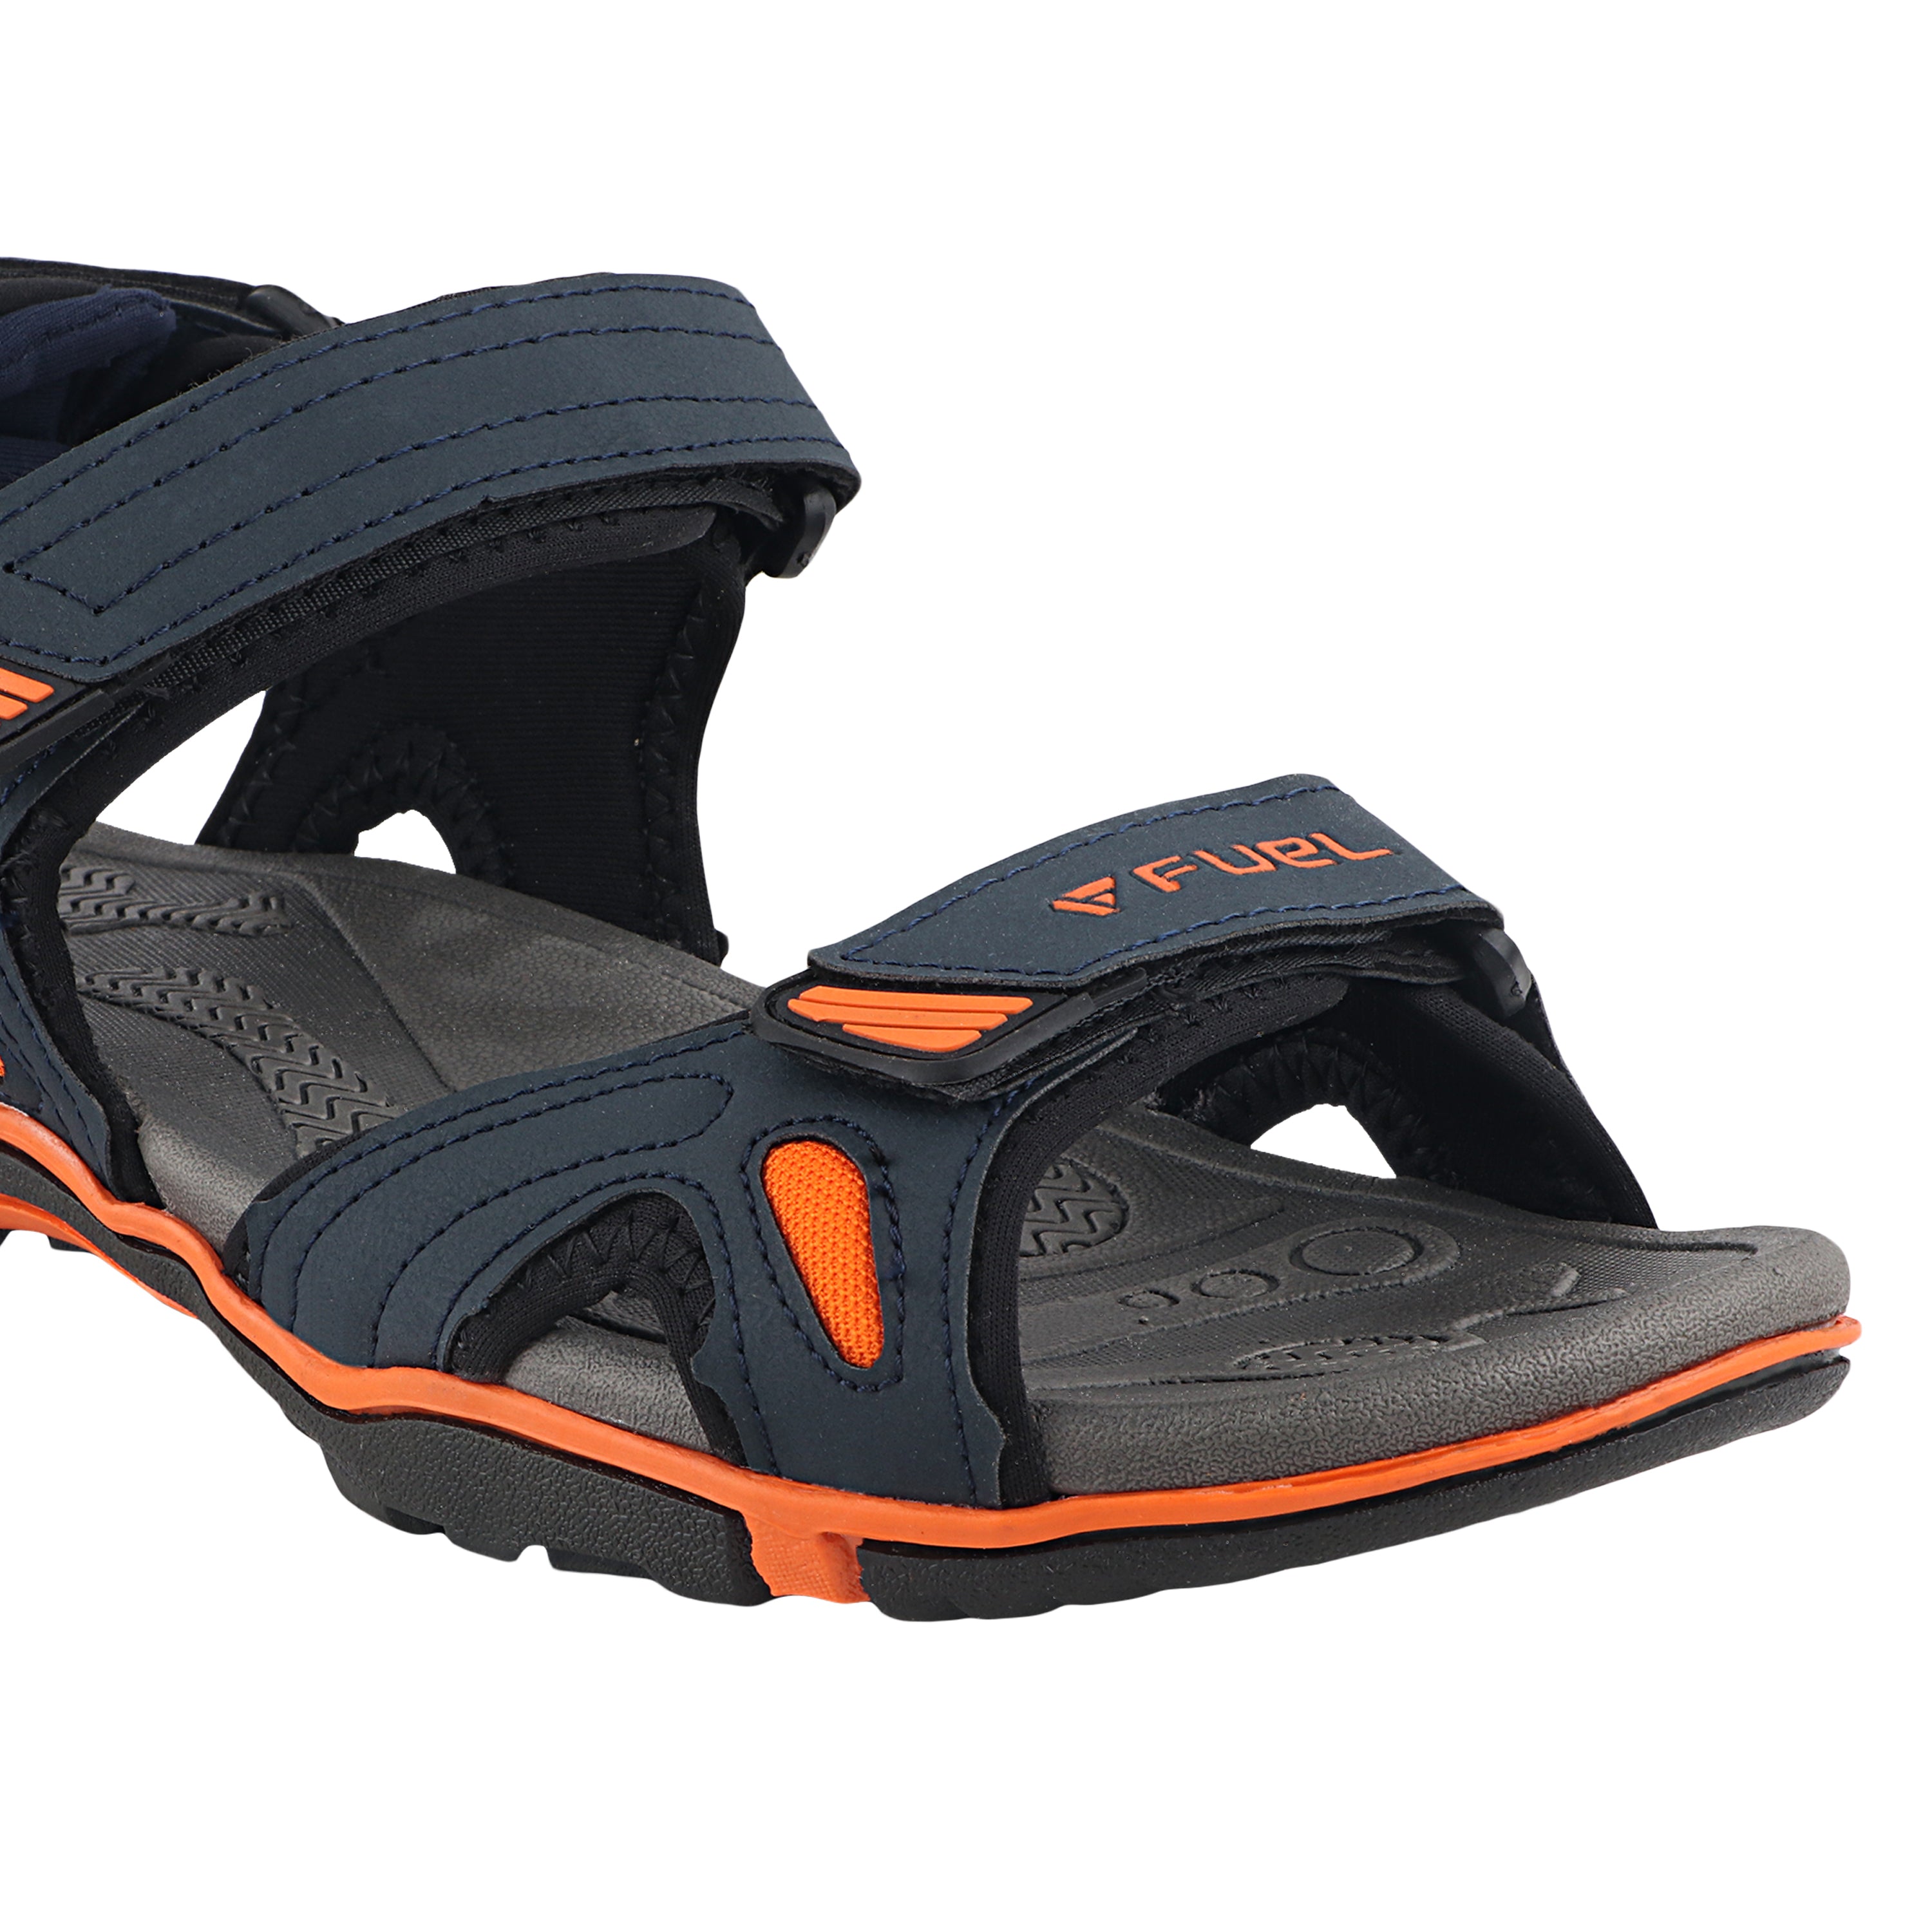 Fuel Jordan Sandals For Men's (Navy-Orange)